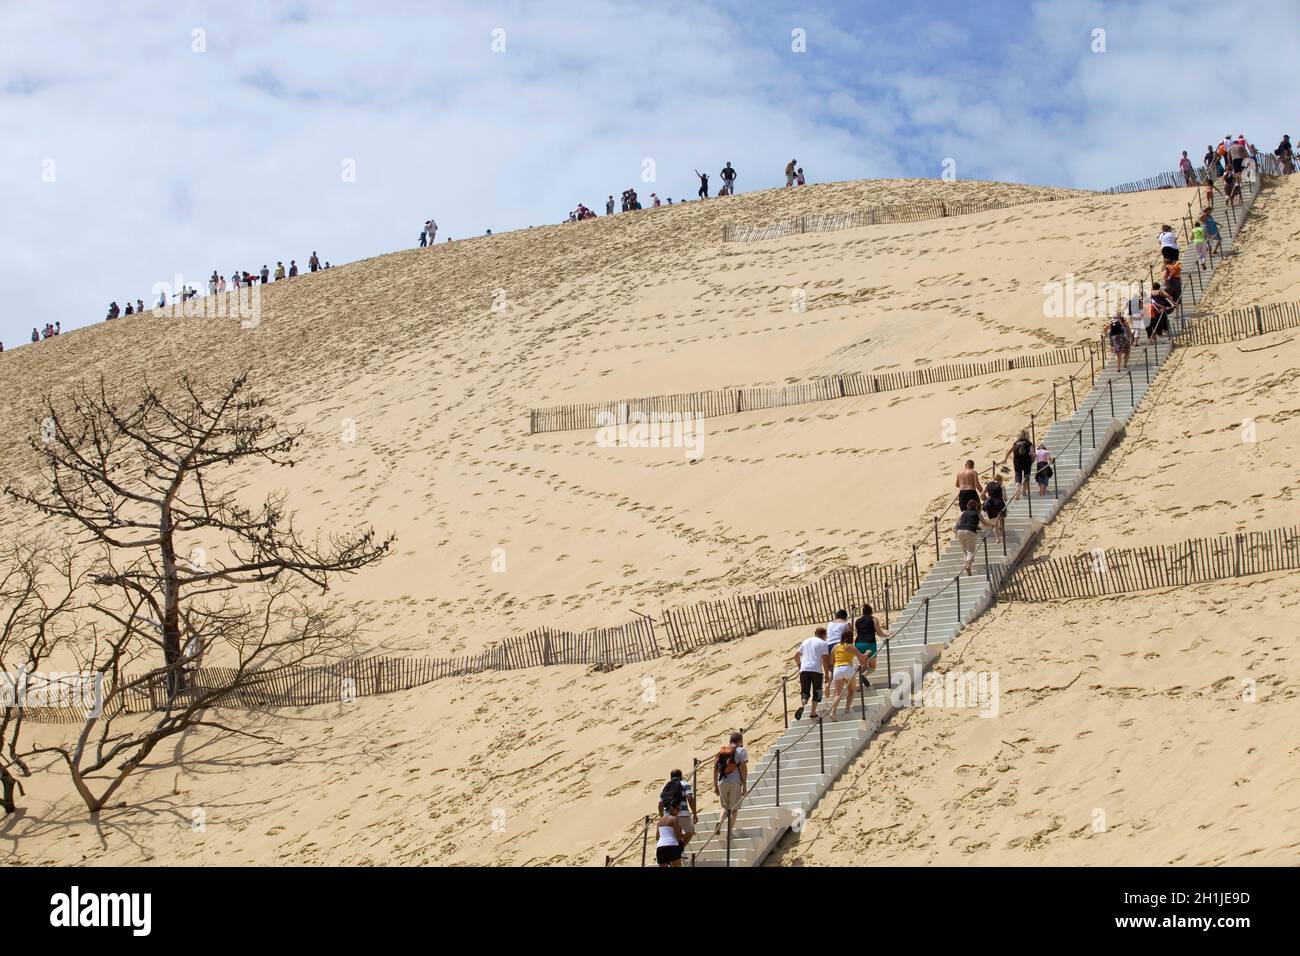 PYLA SUR MER, FRANKREICH - 8. AUGUST: Besucher der berühmten Düne von Pyla, der höchsten Sanddüne Europas, am 8. August 2012 in Pyla Sur Mer, Frankreich. Stockfoto